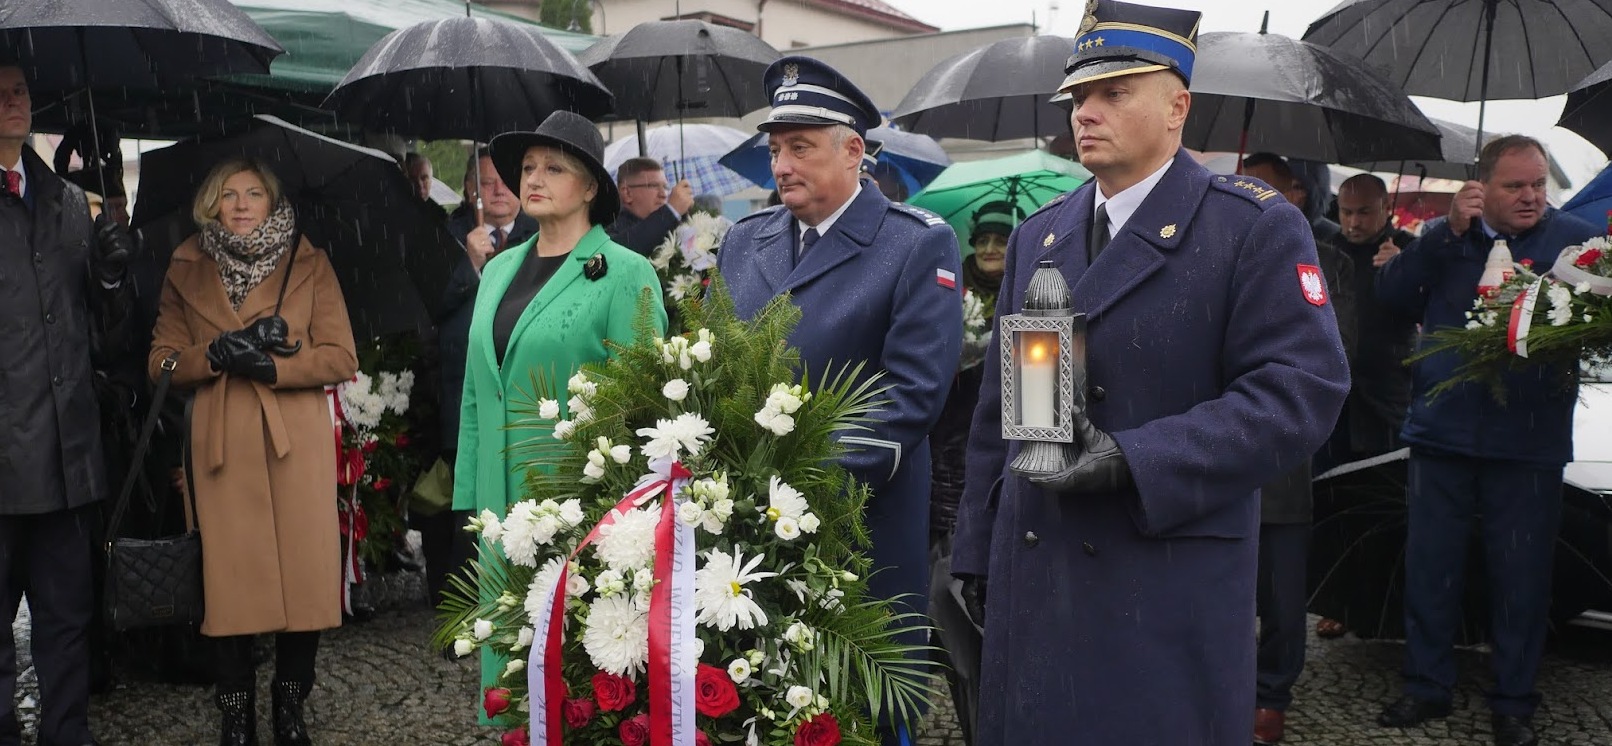 Wiesława Burnos, członek zarządu województwa oraz mężczyźni w mundurach oddają hołd pod pomnikiem, jeden z mężczyzn trzyma wiązankę kwiatów, drugi lampion